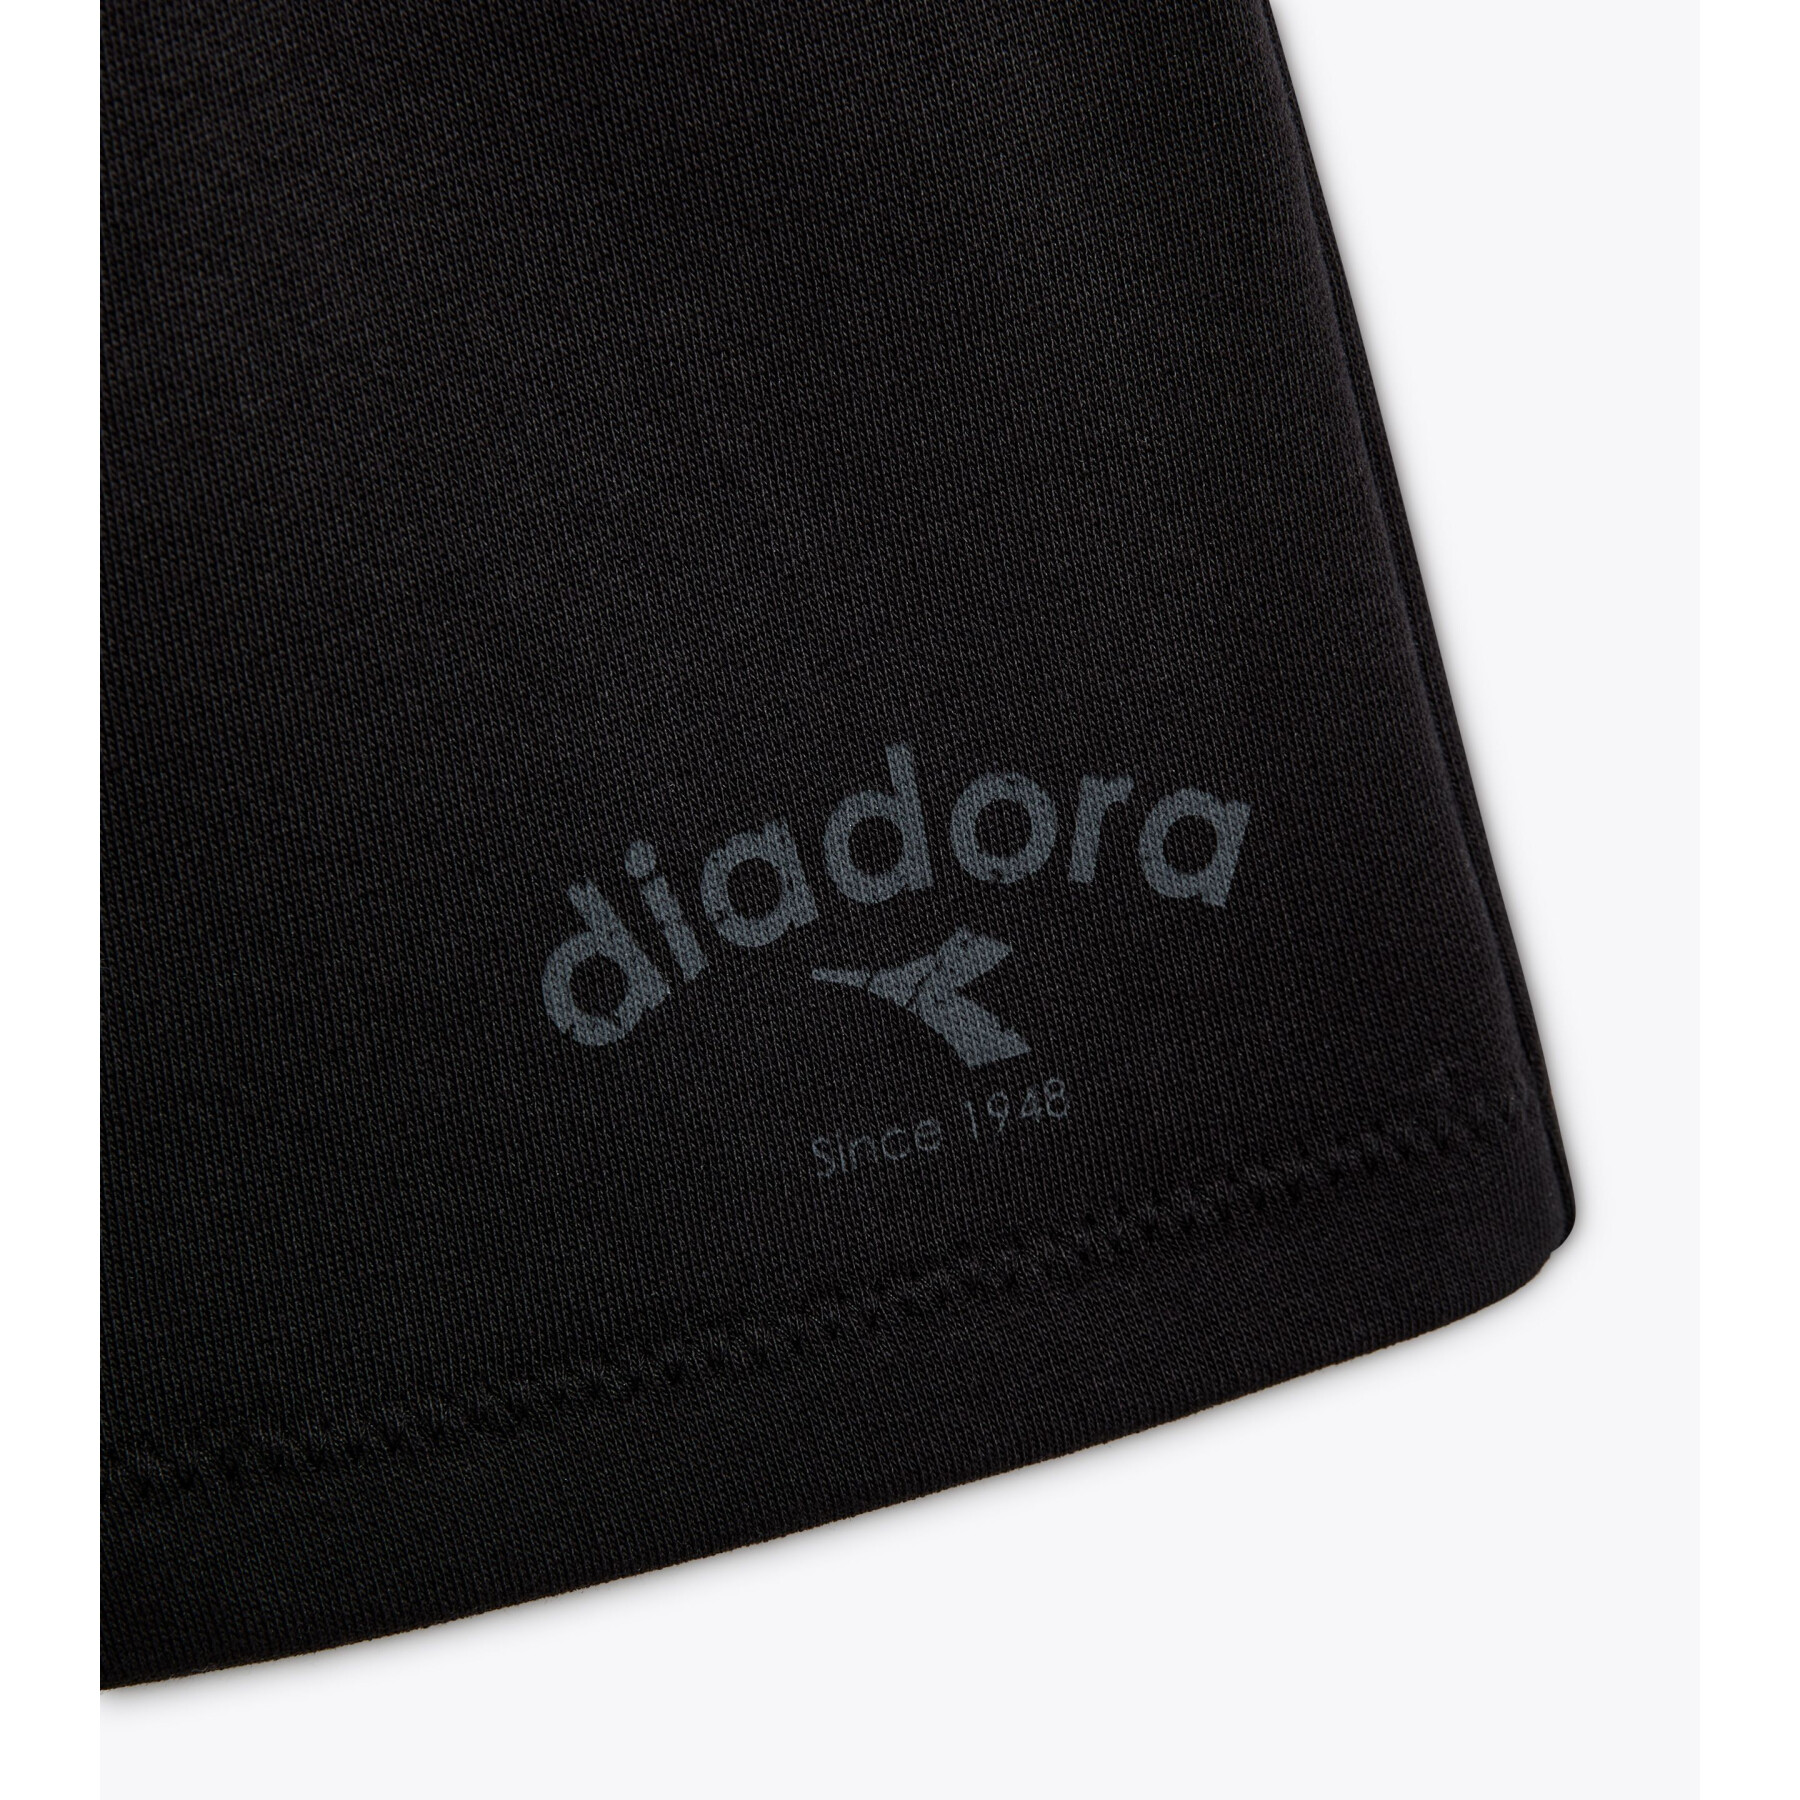 Short femme Diadora ATHL Logo